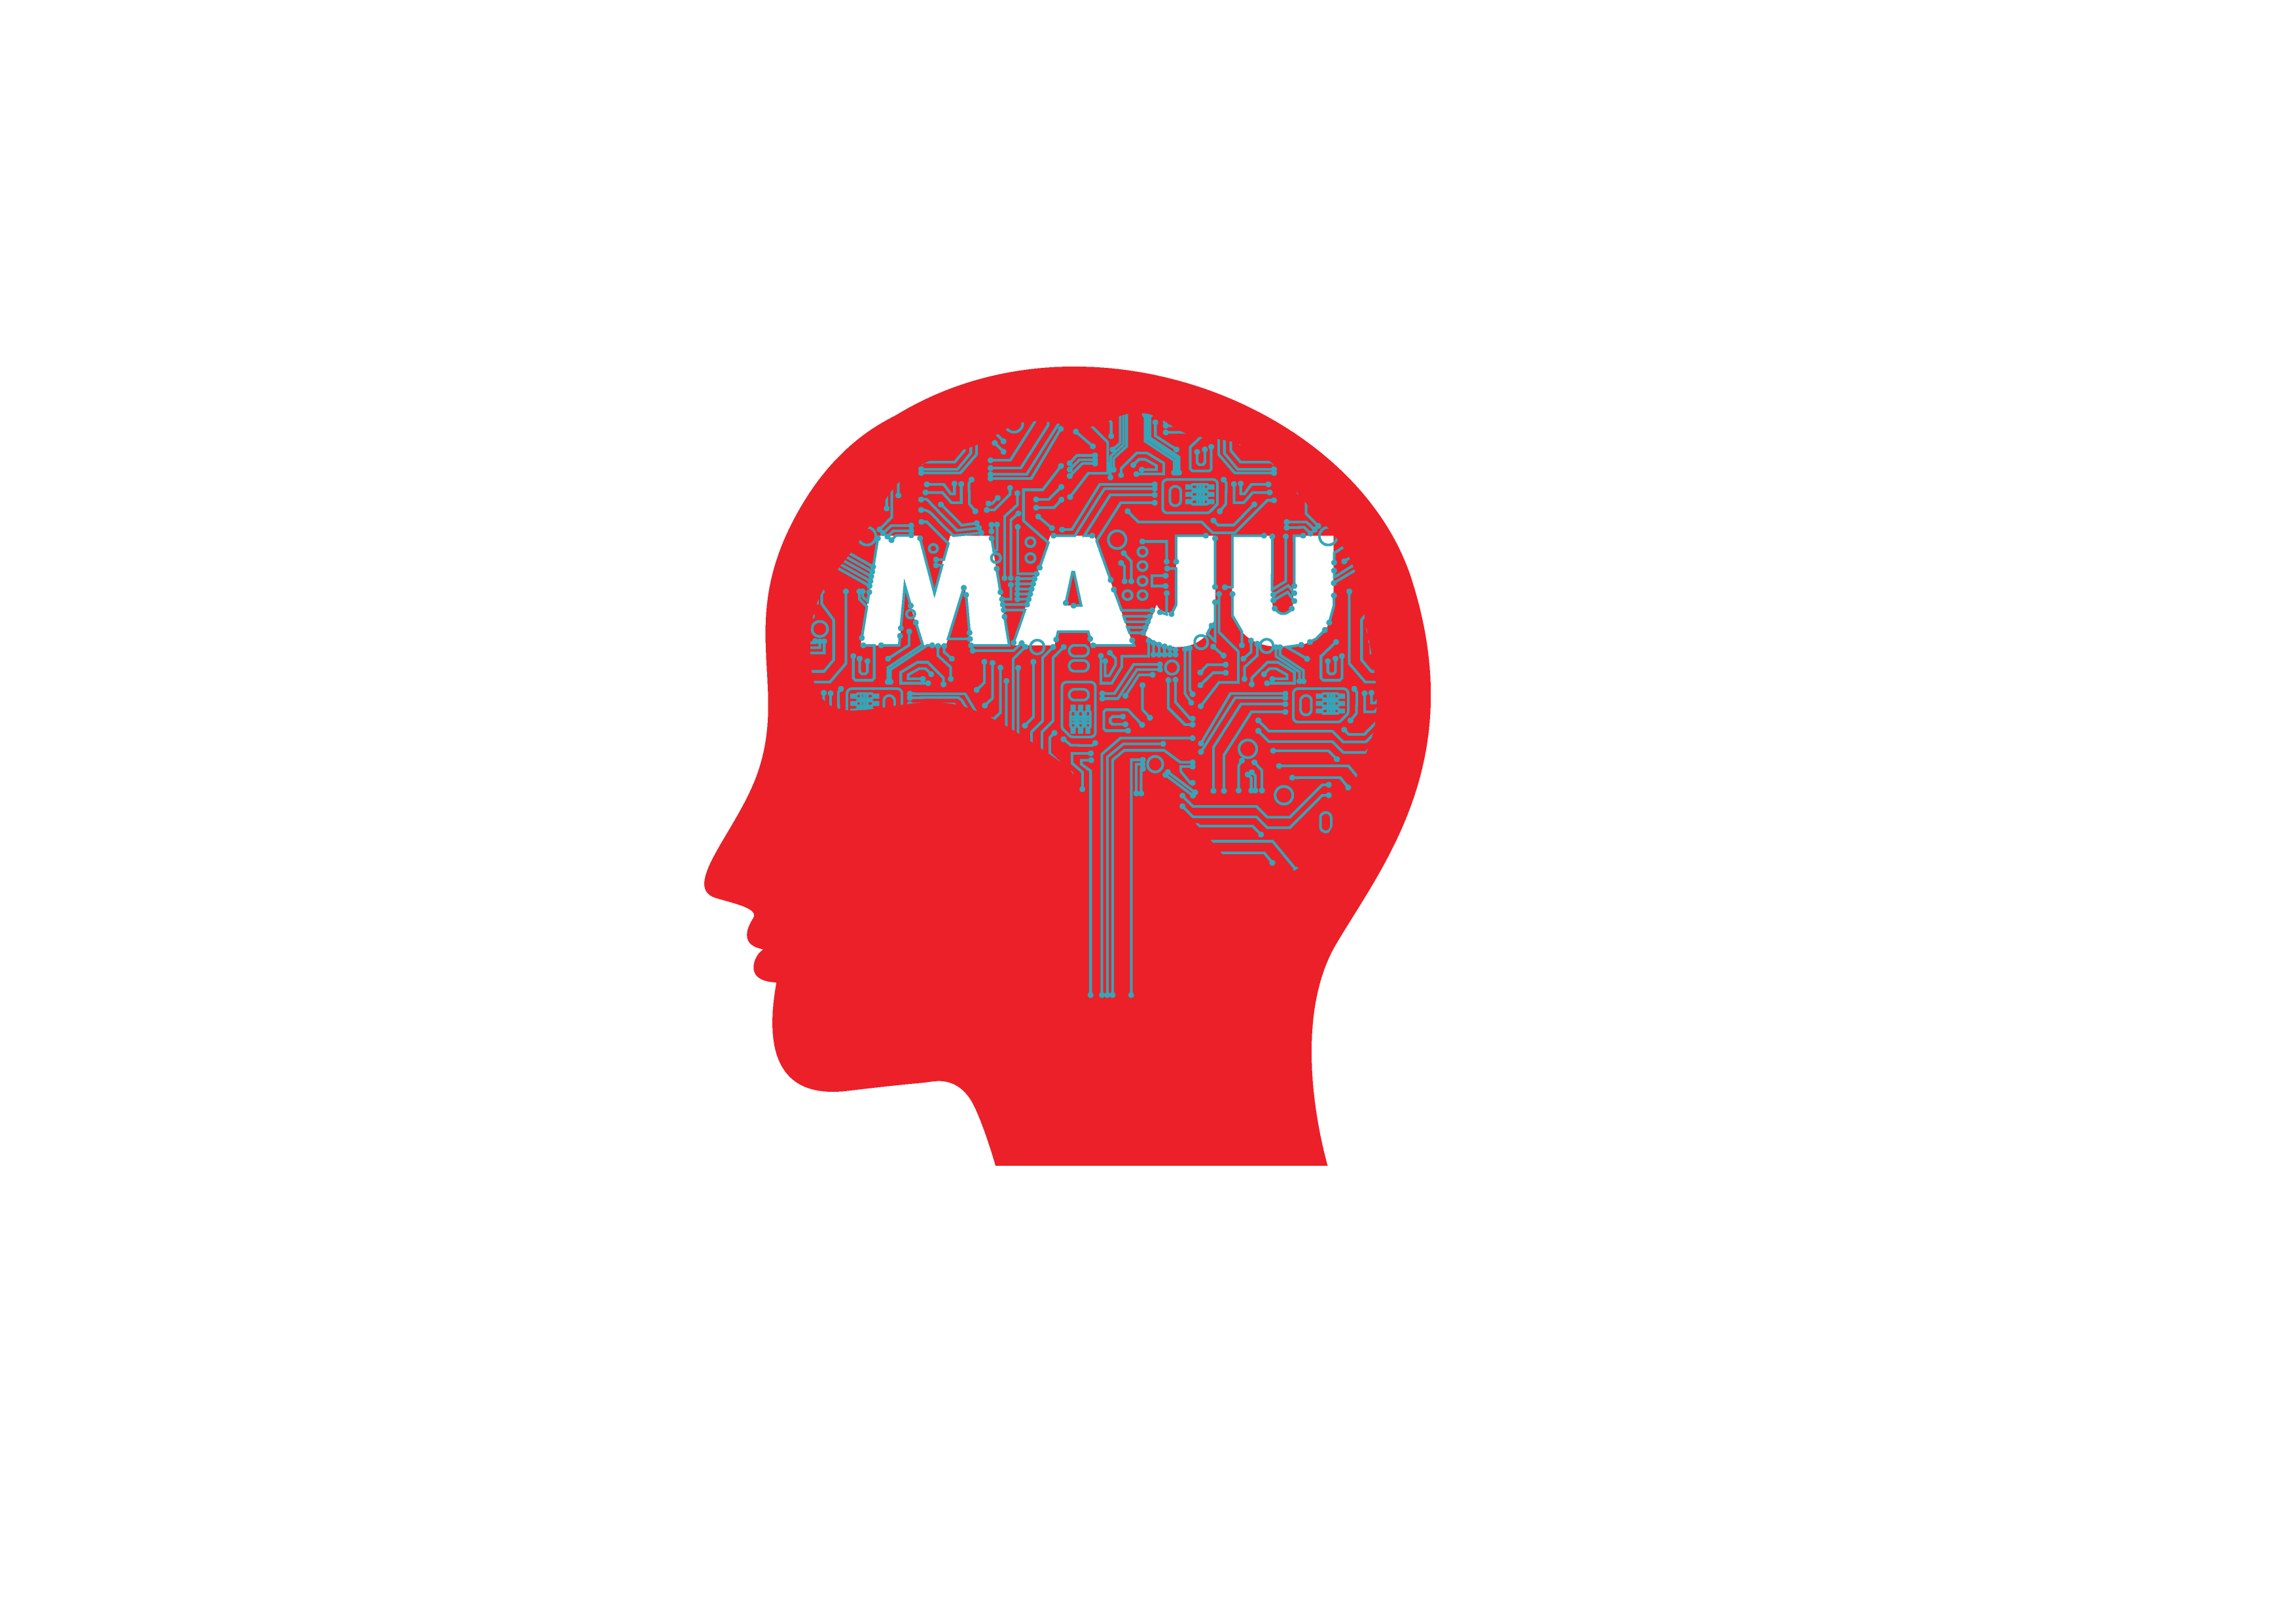 MAJU Foundation